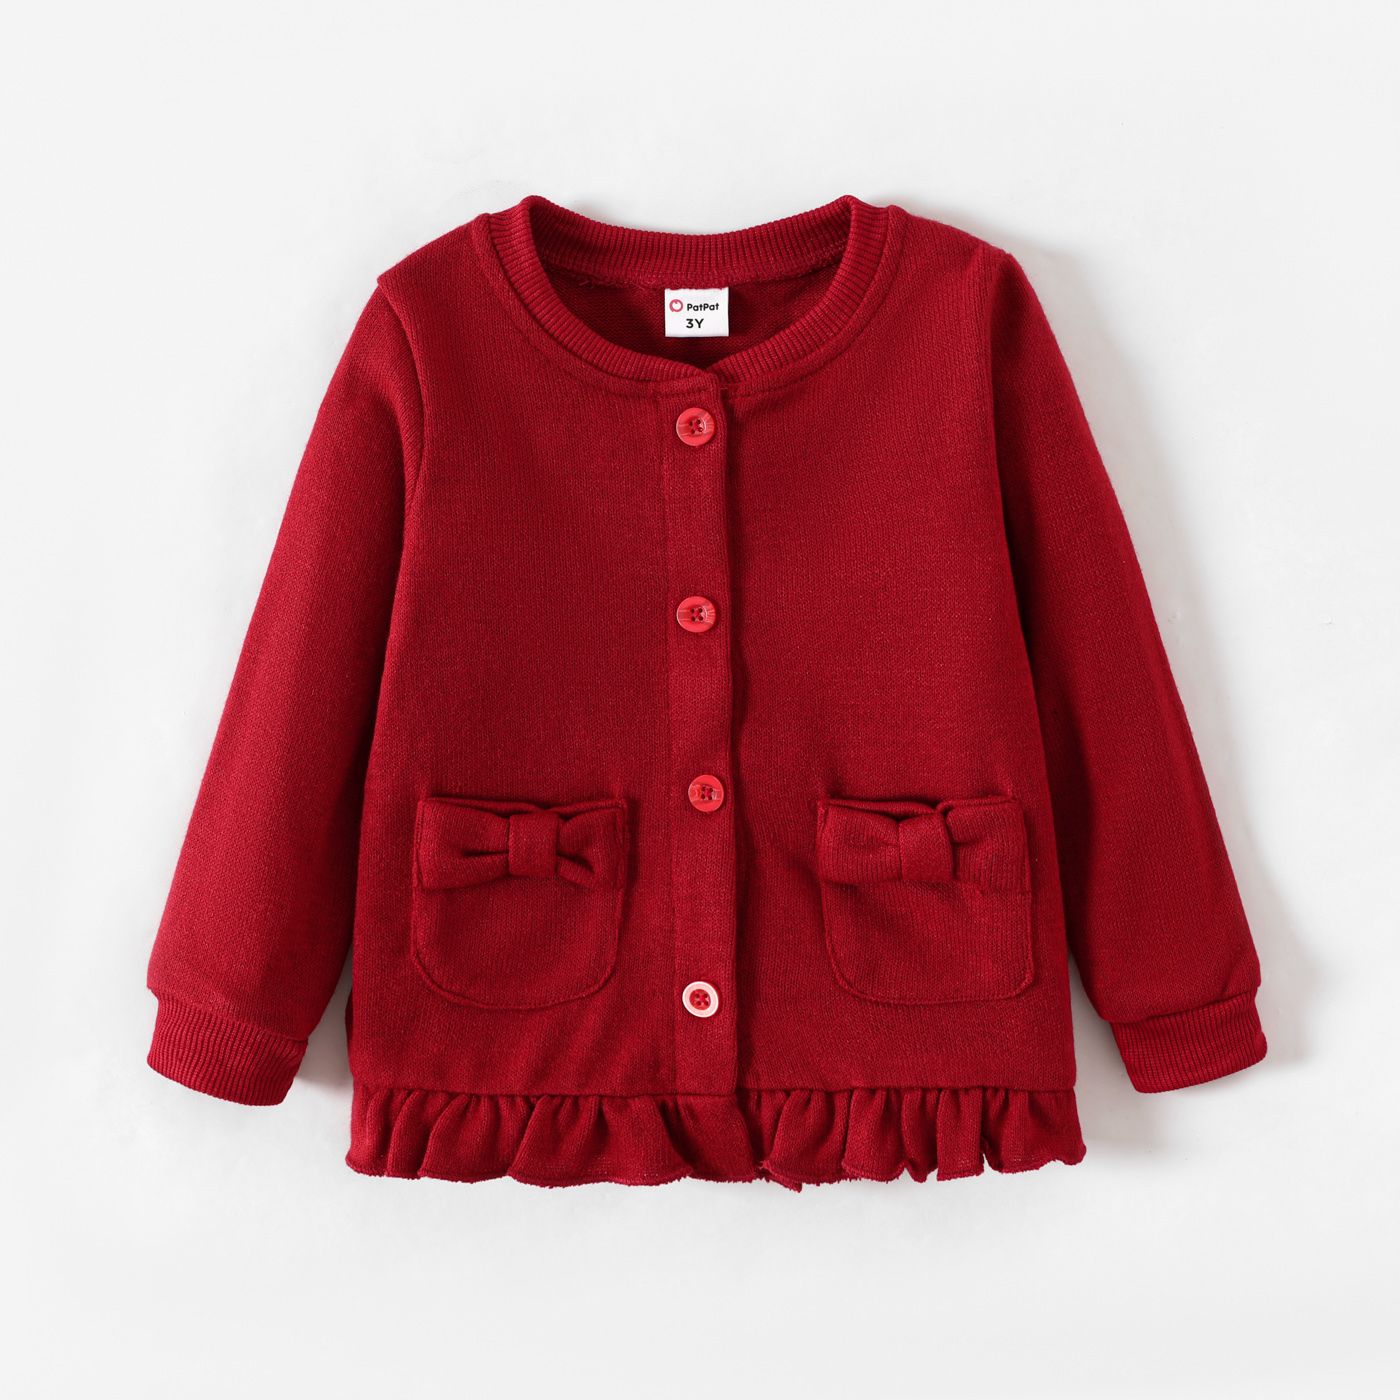 Toddler Girl School Uniform Ruffle Hem Button Up Jacket